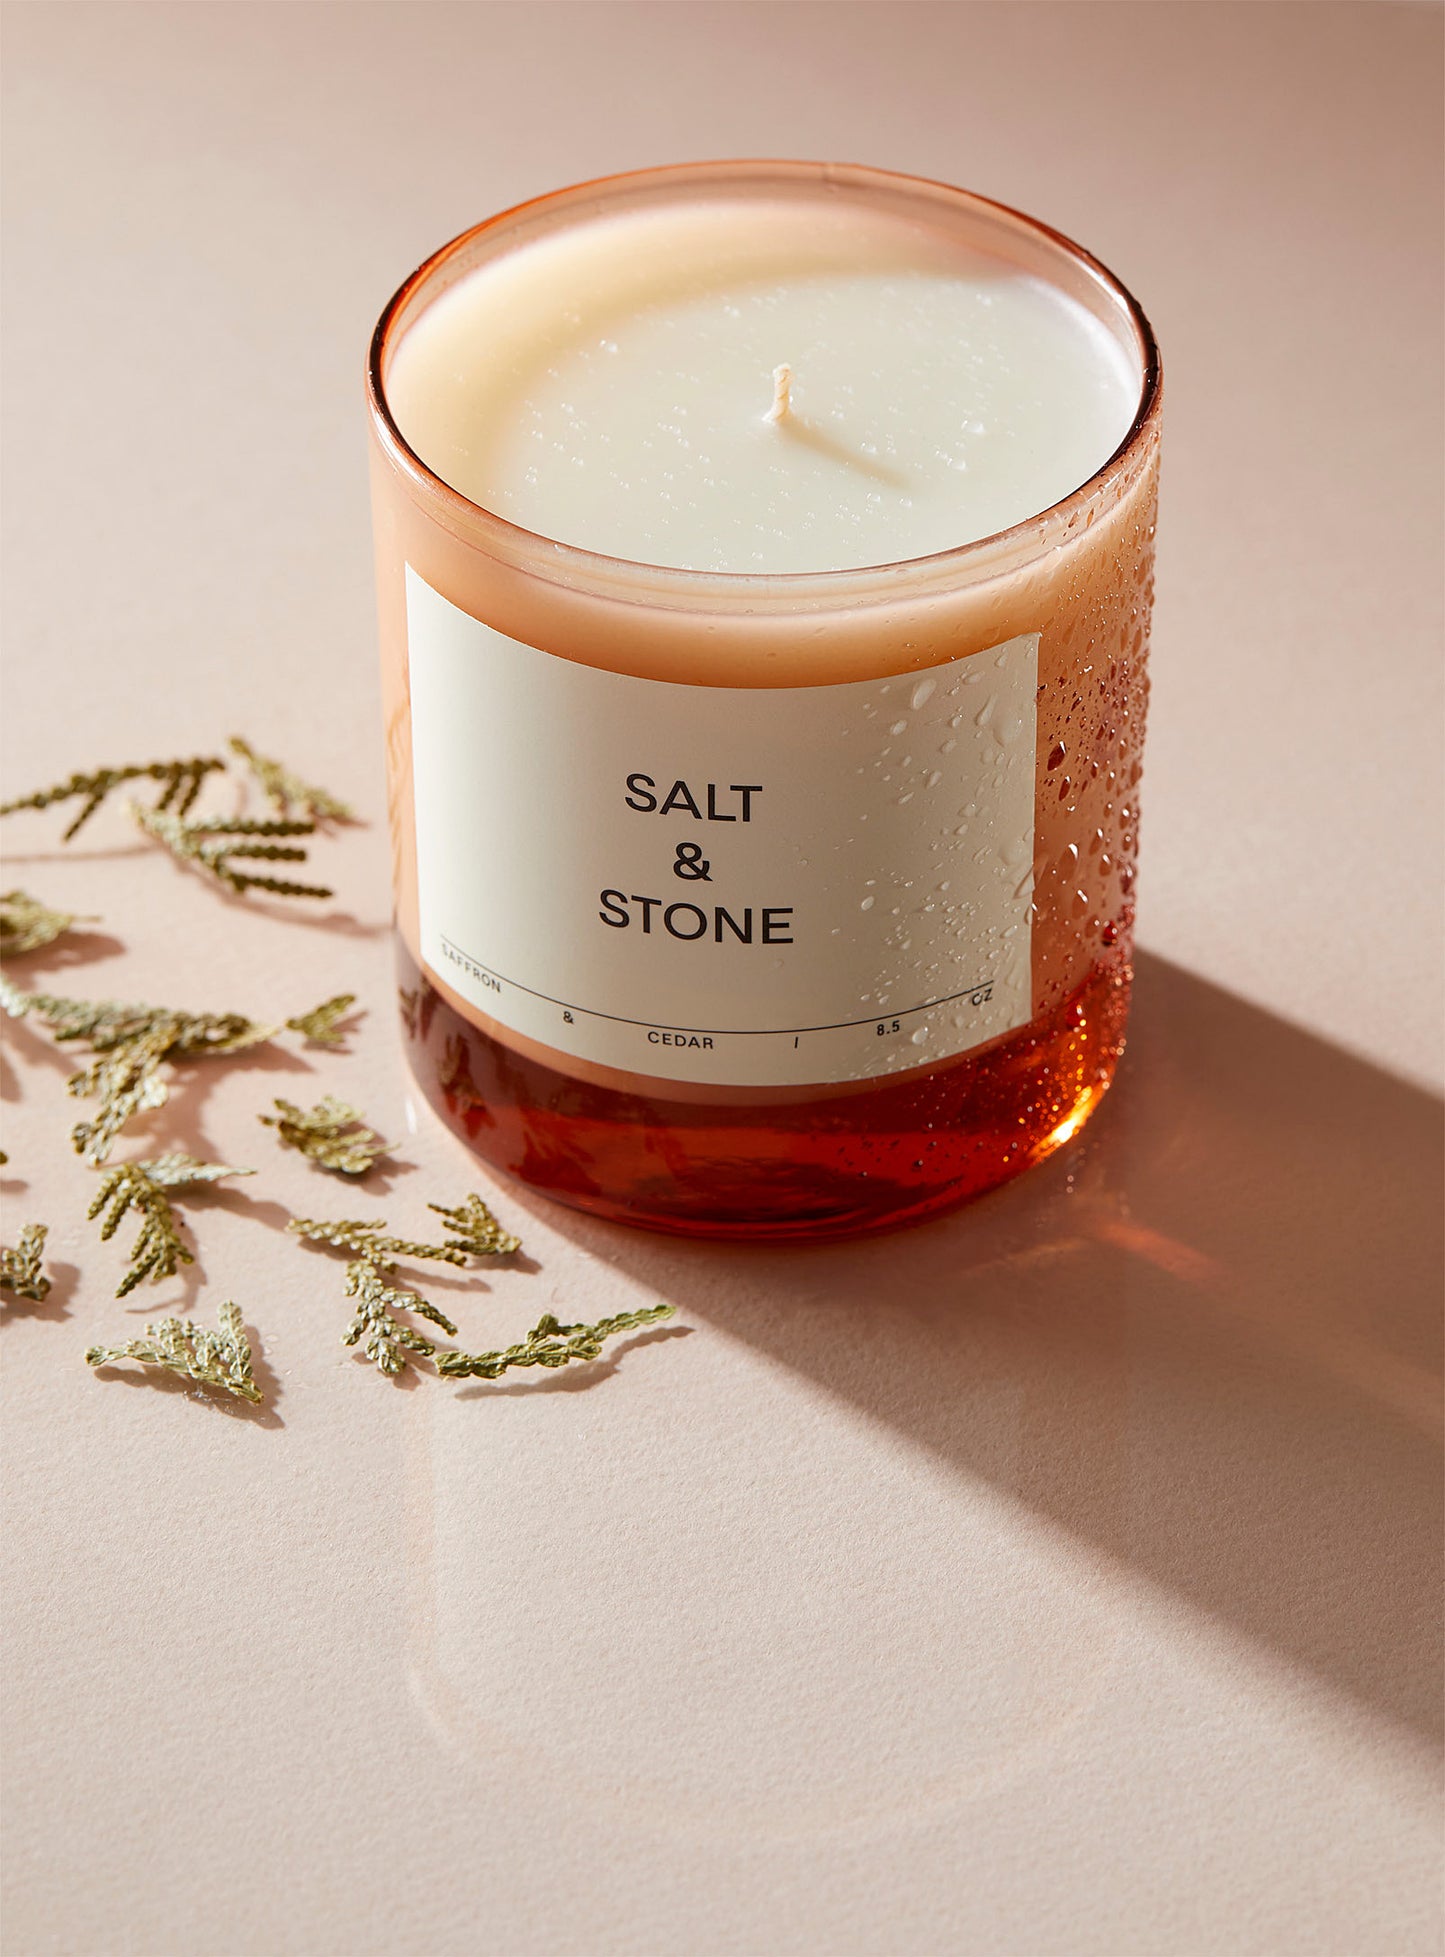 Salt &amp; Stone - The saffron and cedar scented candle